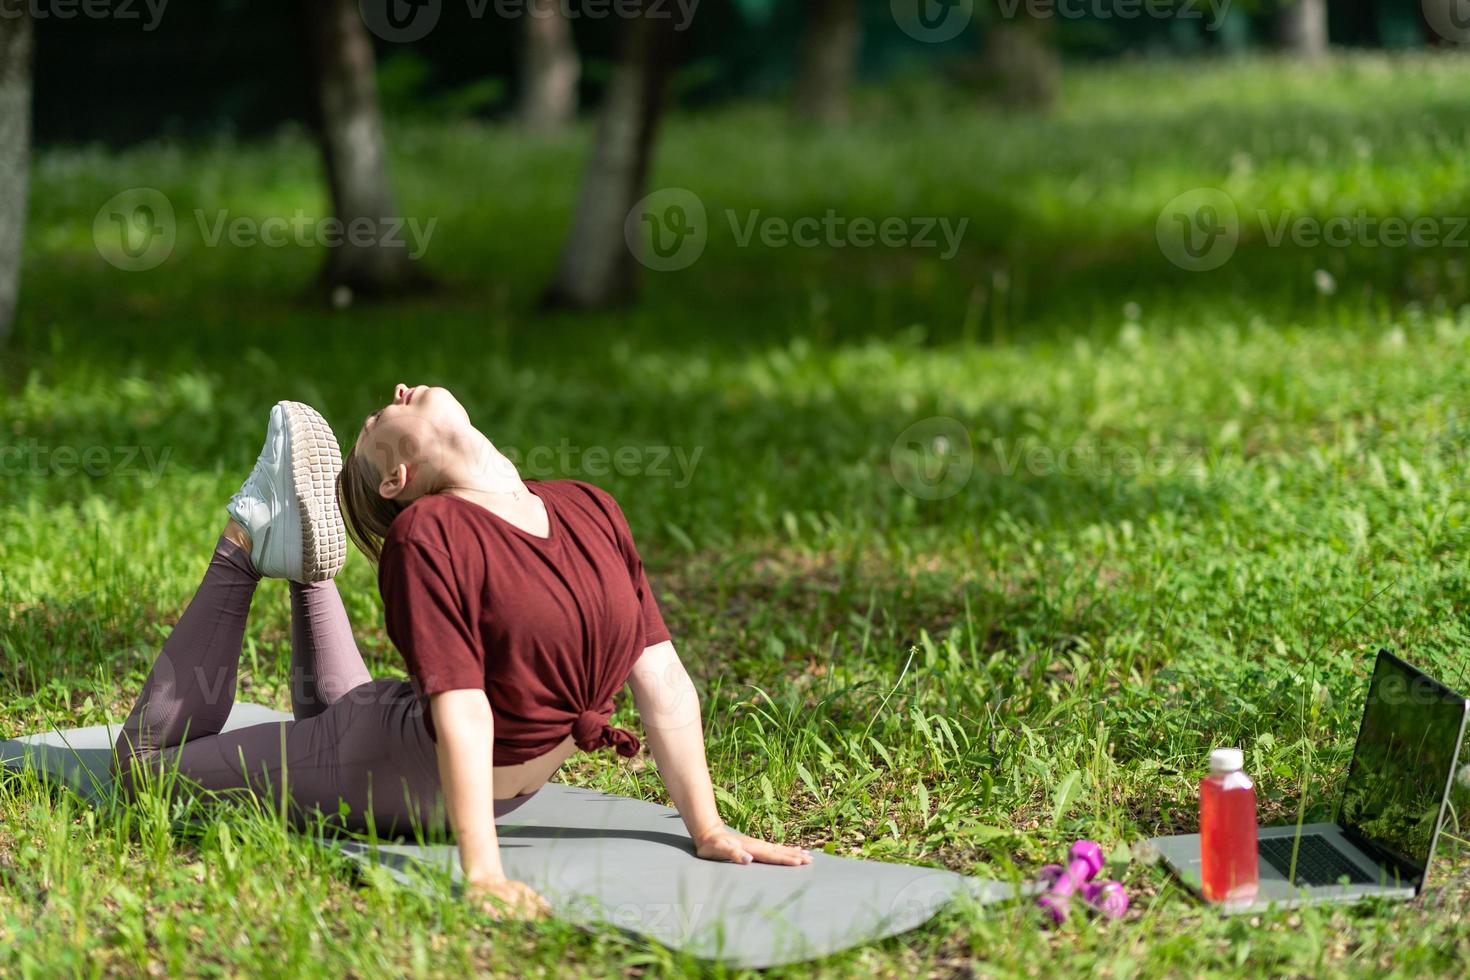 jeune fille ayant une séance d'entraînement en ligne à l'extérieur à l'aide d'un ordinateur portable. cours vidéo de pilates ou de yoga sur internet. heureuse fille souriante pratiquant la leçon de pilates en ligne dans le jardin à l'extérieur pendant la quarantaine. photo